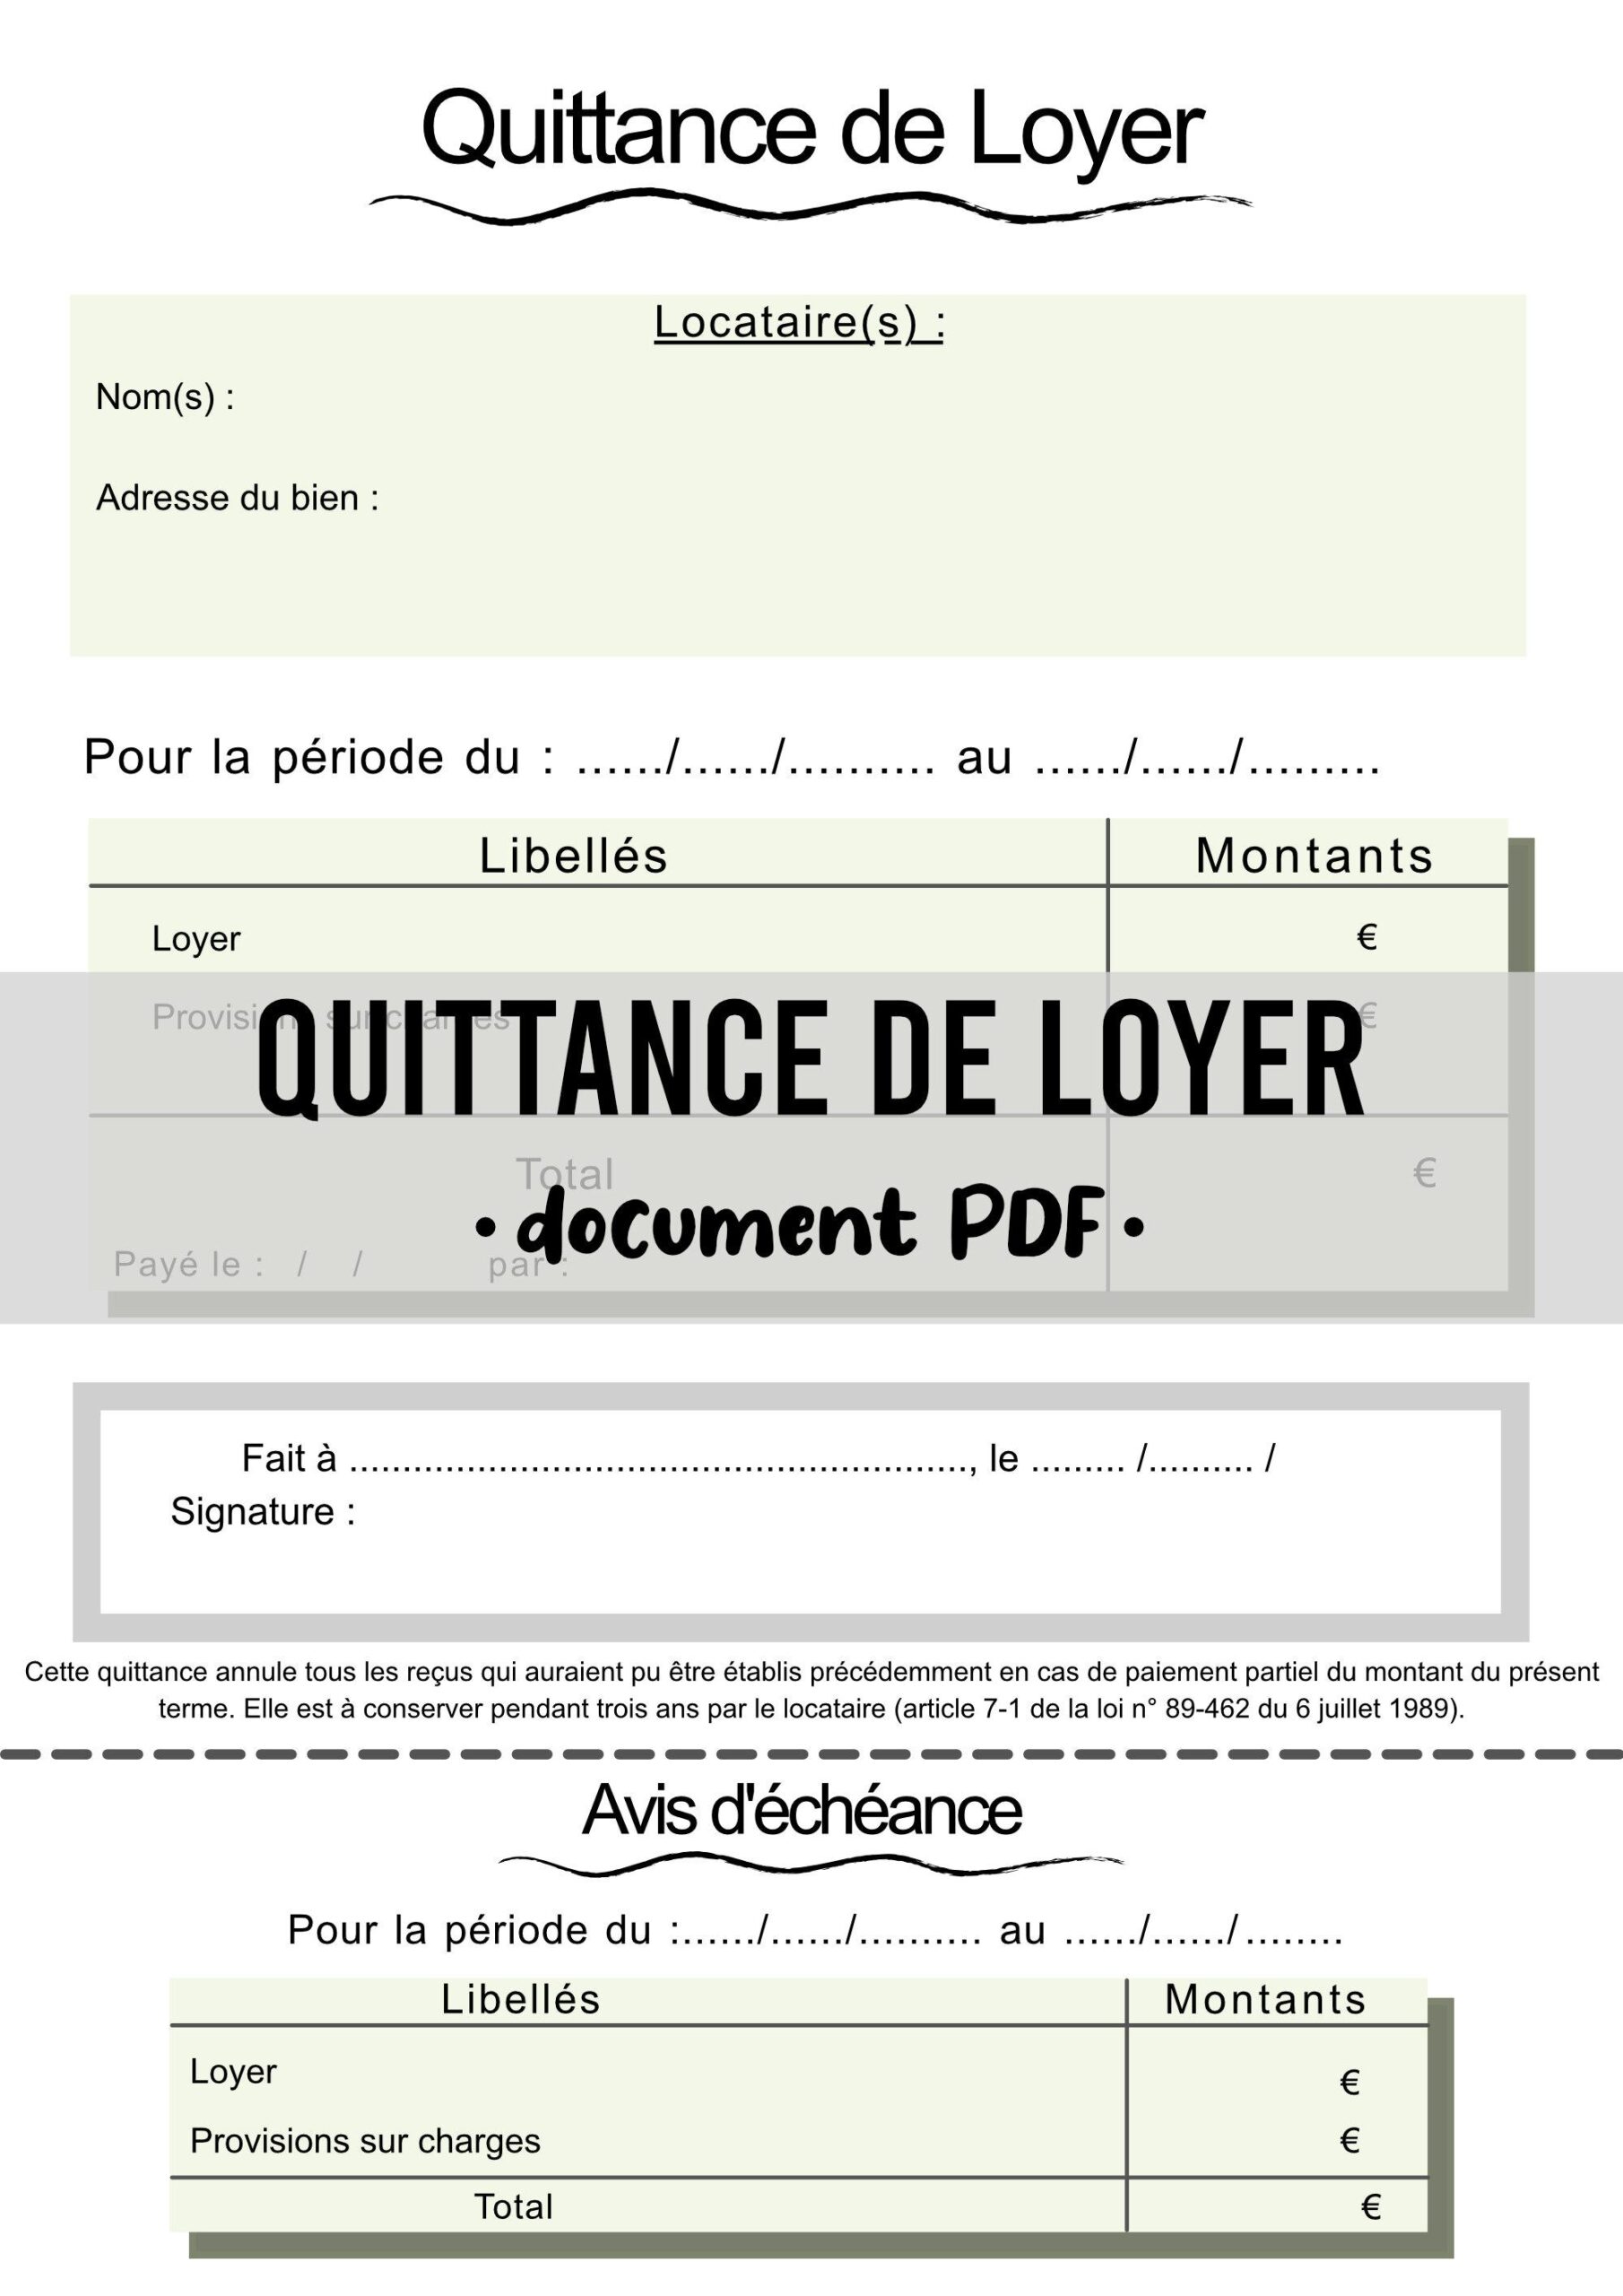 Quittance de Loyer à Imprimer : Guide Complet et Modèles Gratuits